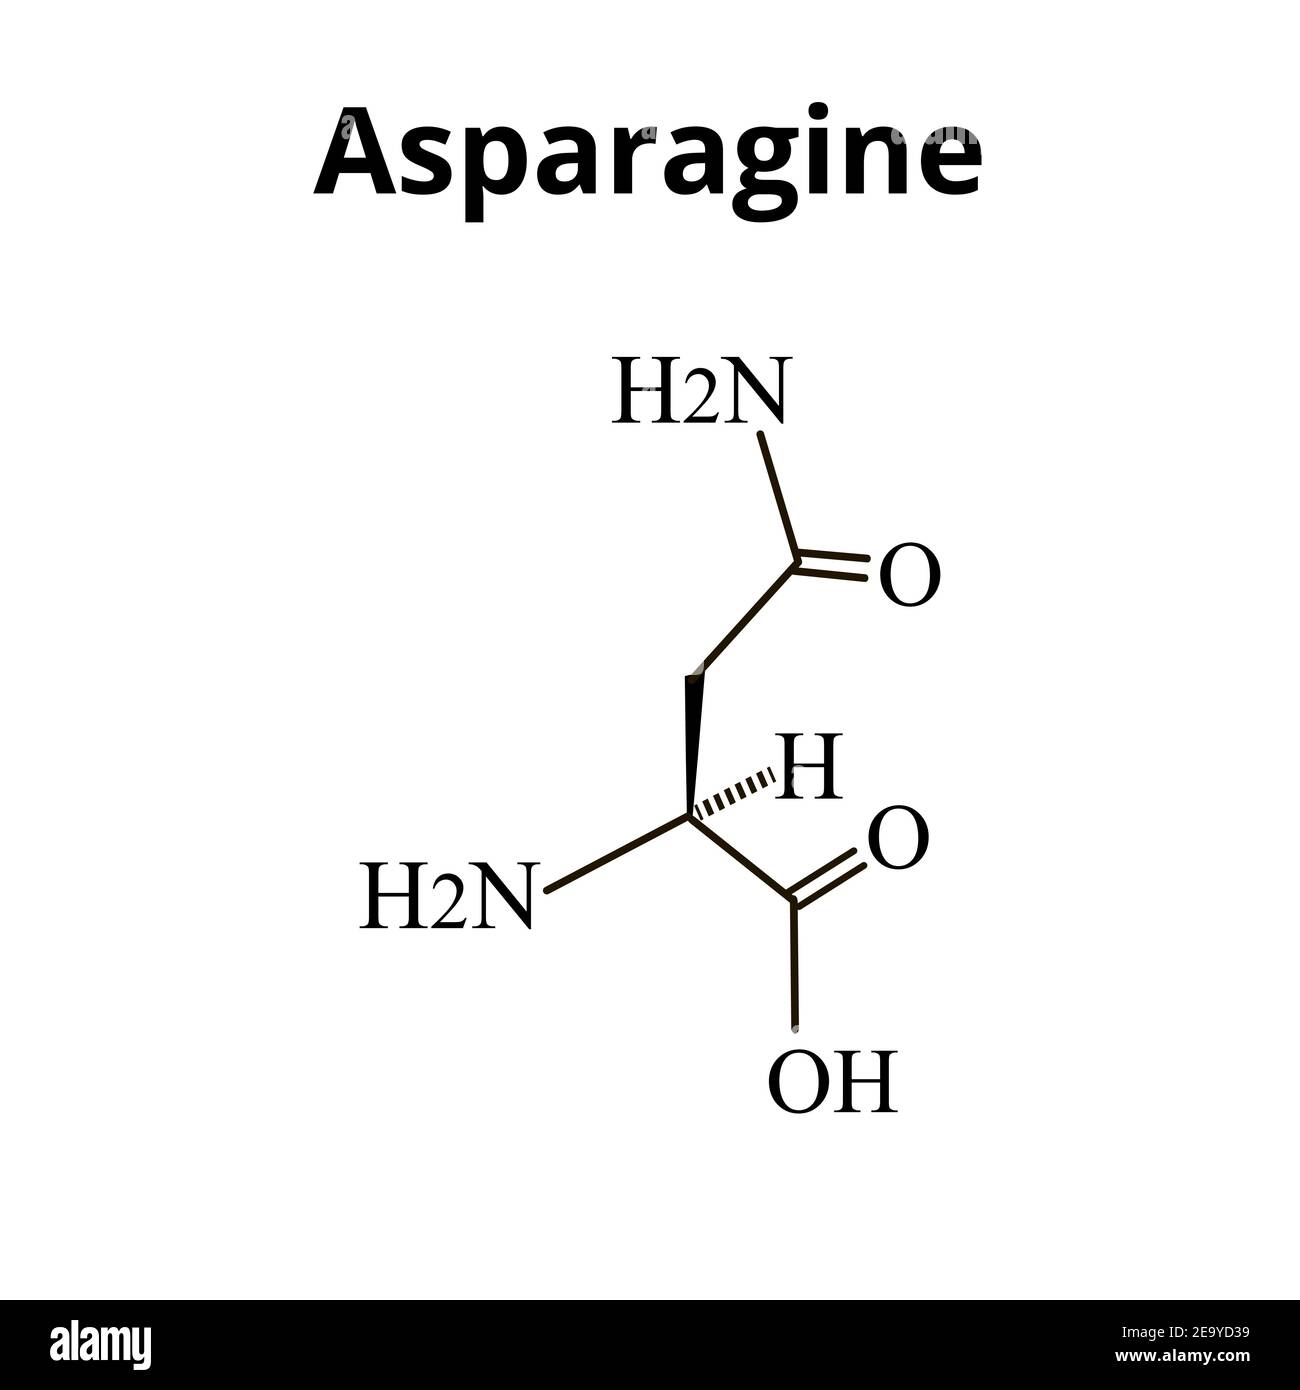 asparagine amino acid structure